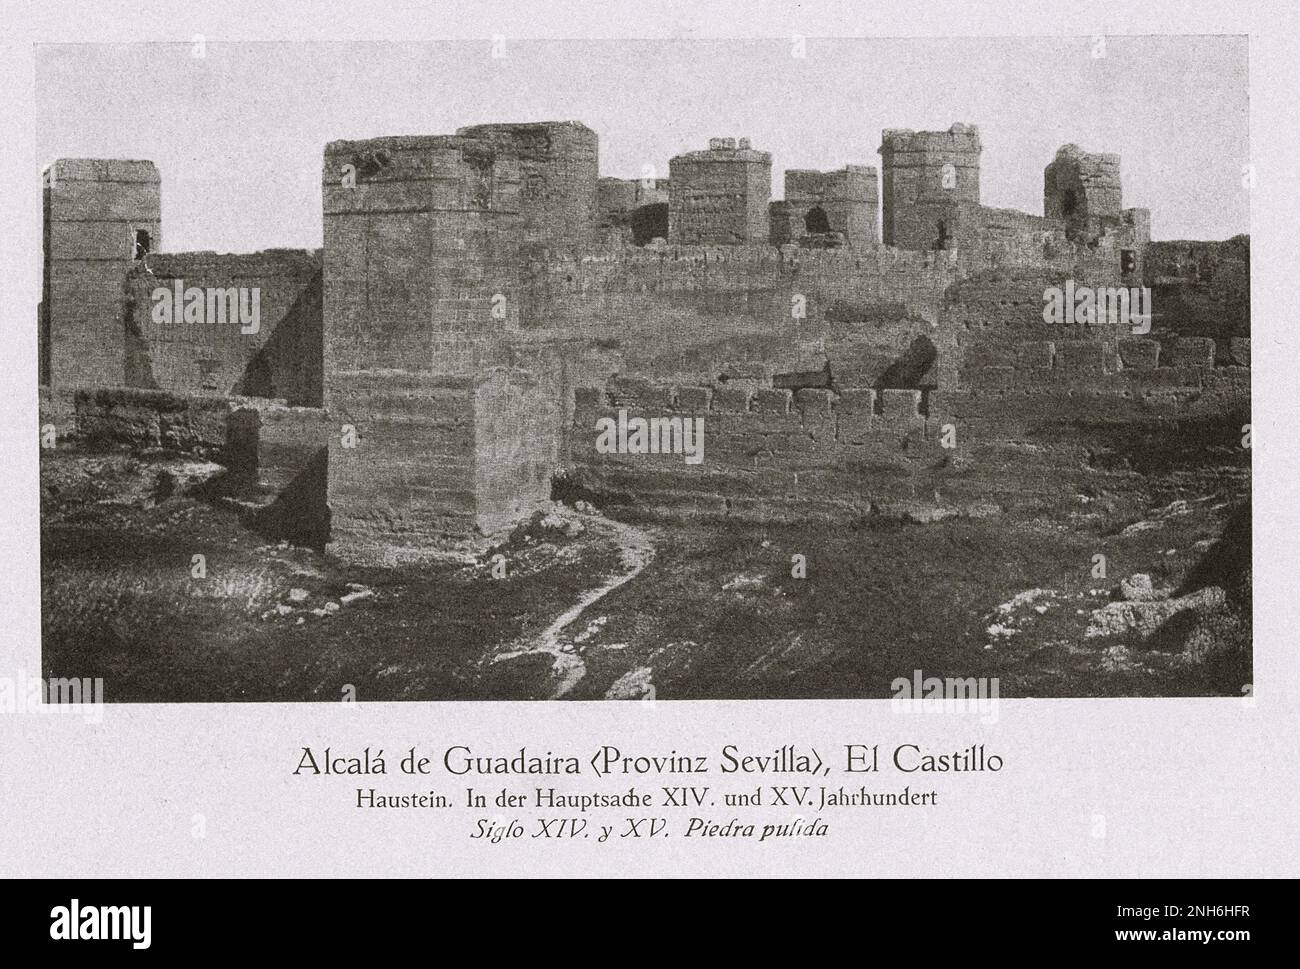 Architektur des alten Spaniens. Alcalá de Guadaíra (Provinz Sevilla), El Castillo (Burg). Stein gehauen. Alcalá de Guadaíra aus dem XIV. Und XV. Jahrhundert ist eine Stadt, die sich etwa 17 km südöstlich von Sevilla befindet Stockfoto